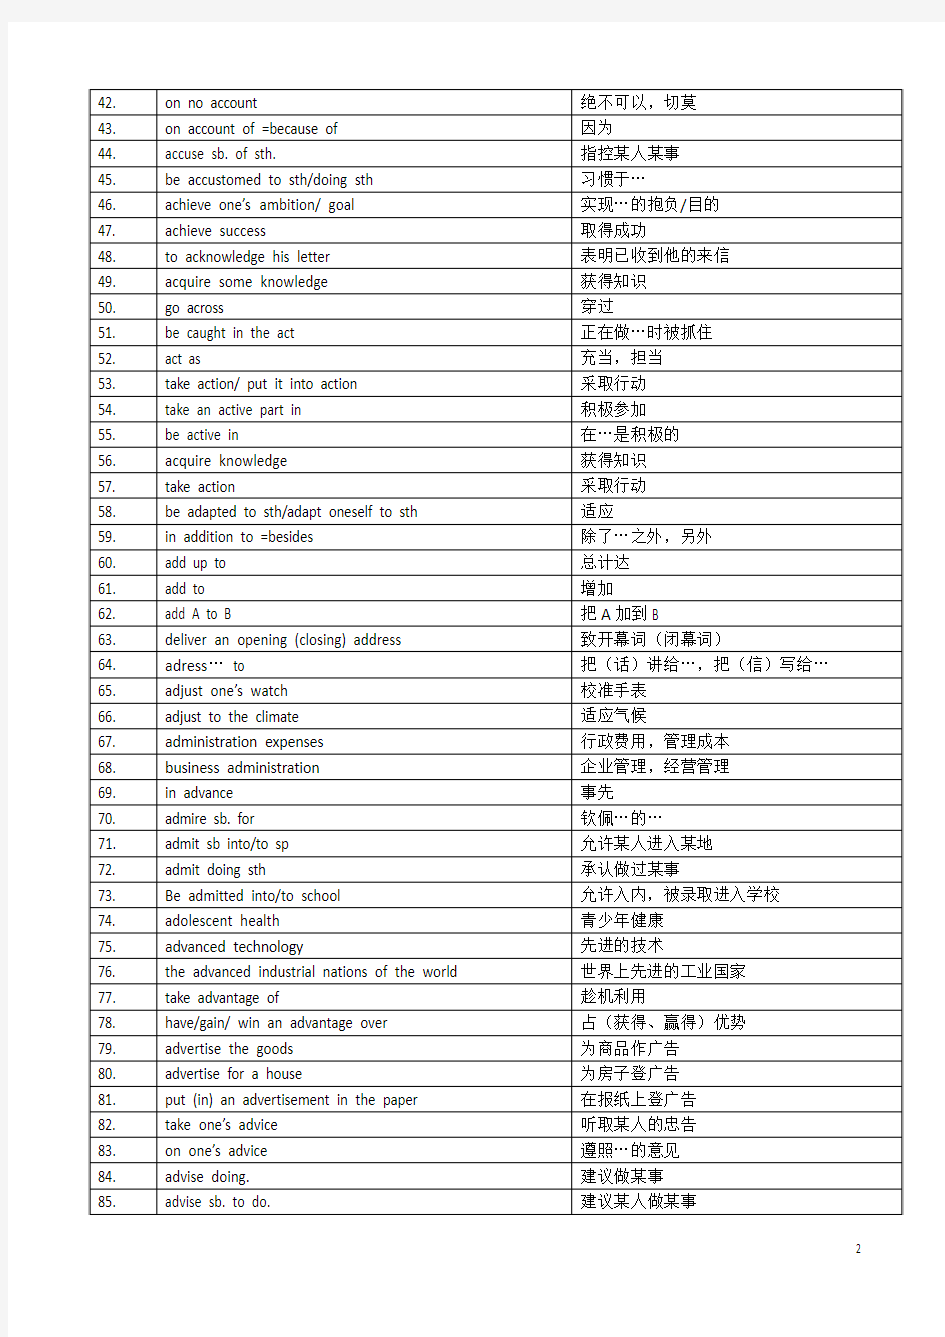 2018年上海高考英语短语大全英汉对照(共3979个)